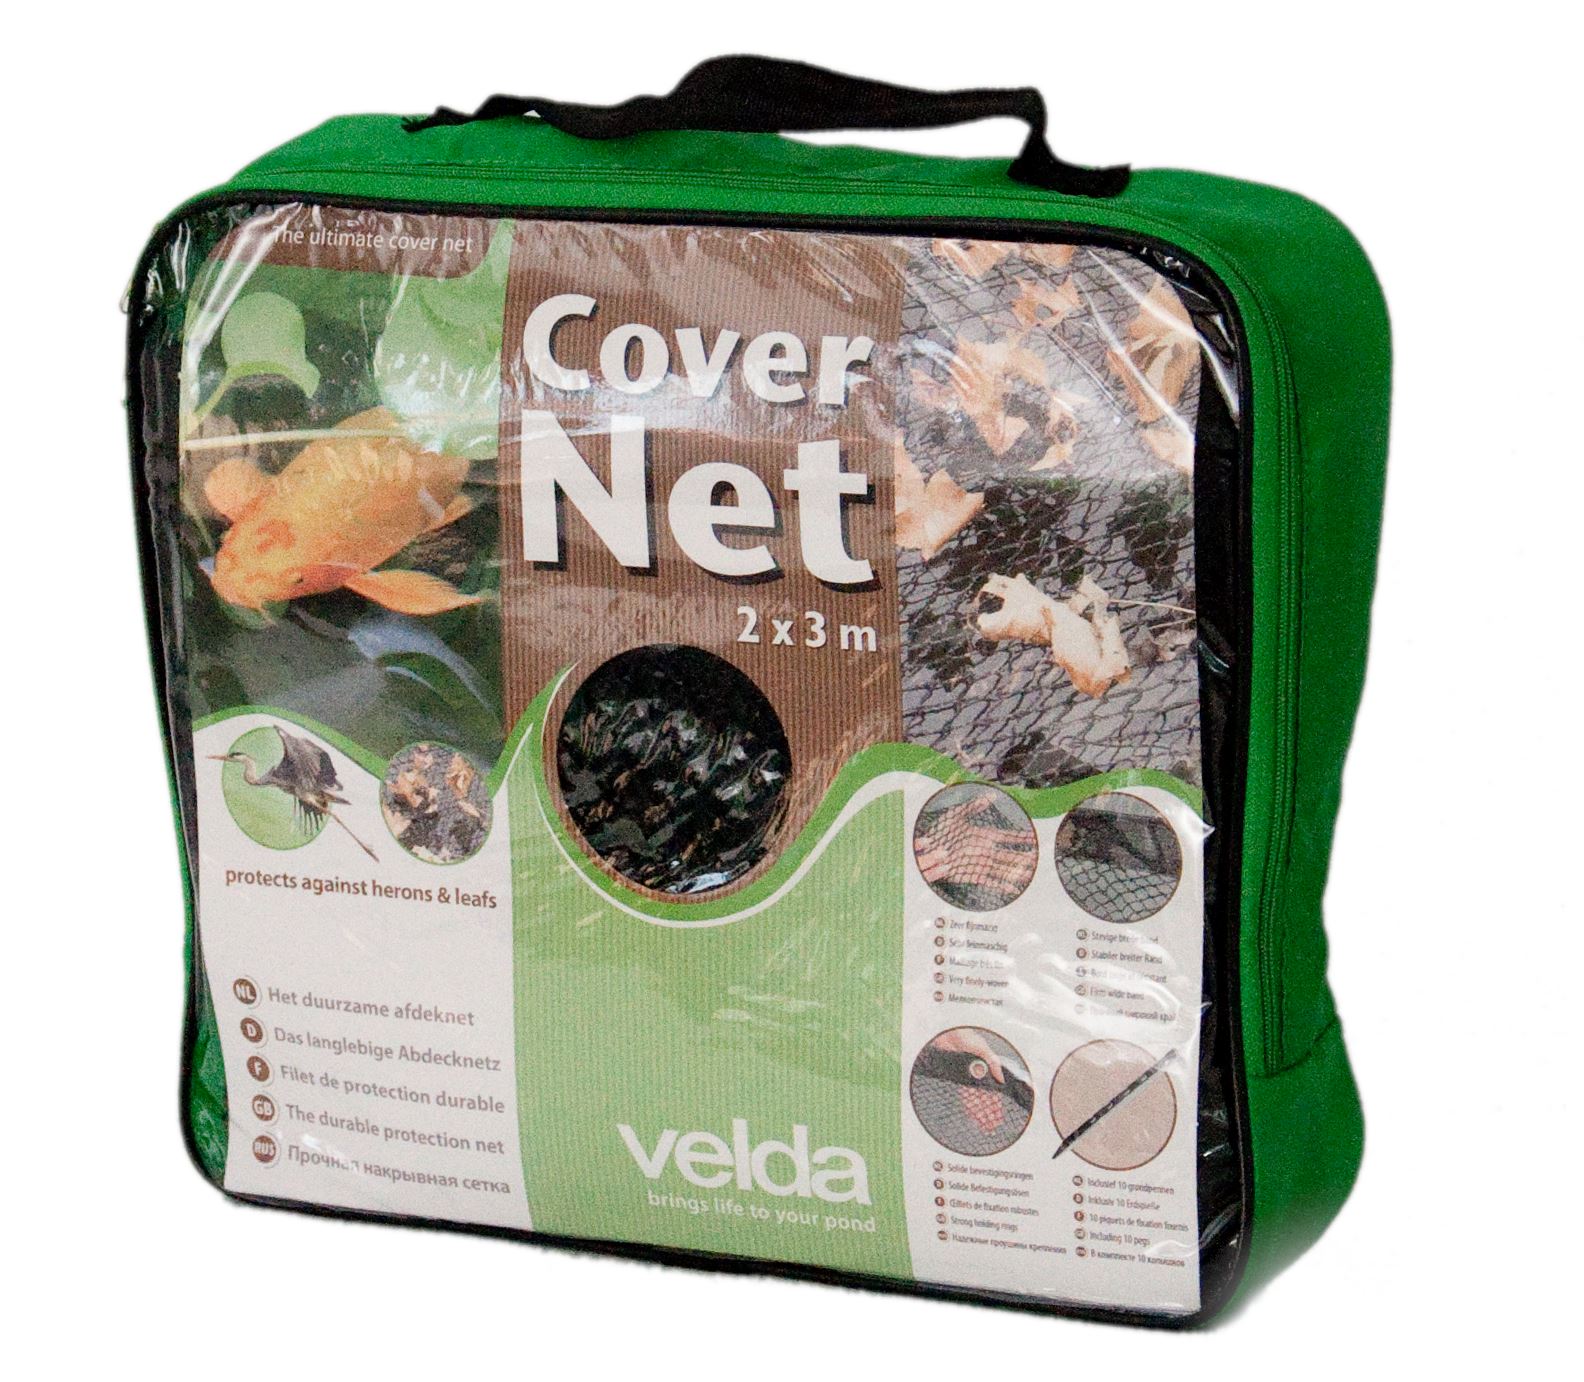 Cover-Net-2-x-3-m-fijnmazig-vijverafdeknet-met-pennen-voor-meerjarig-gebruik